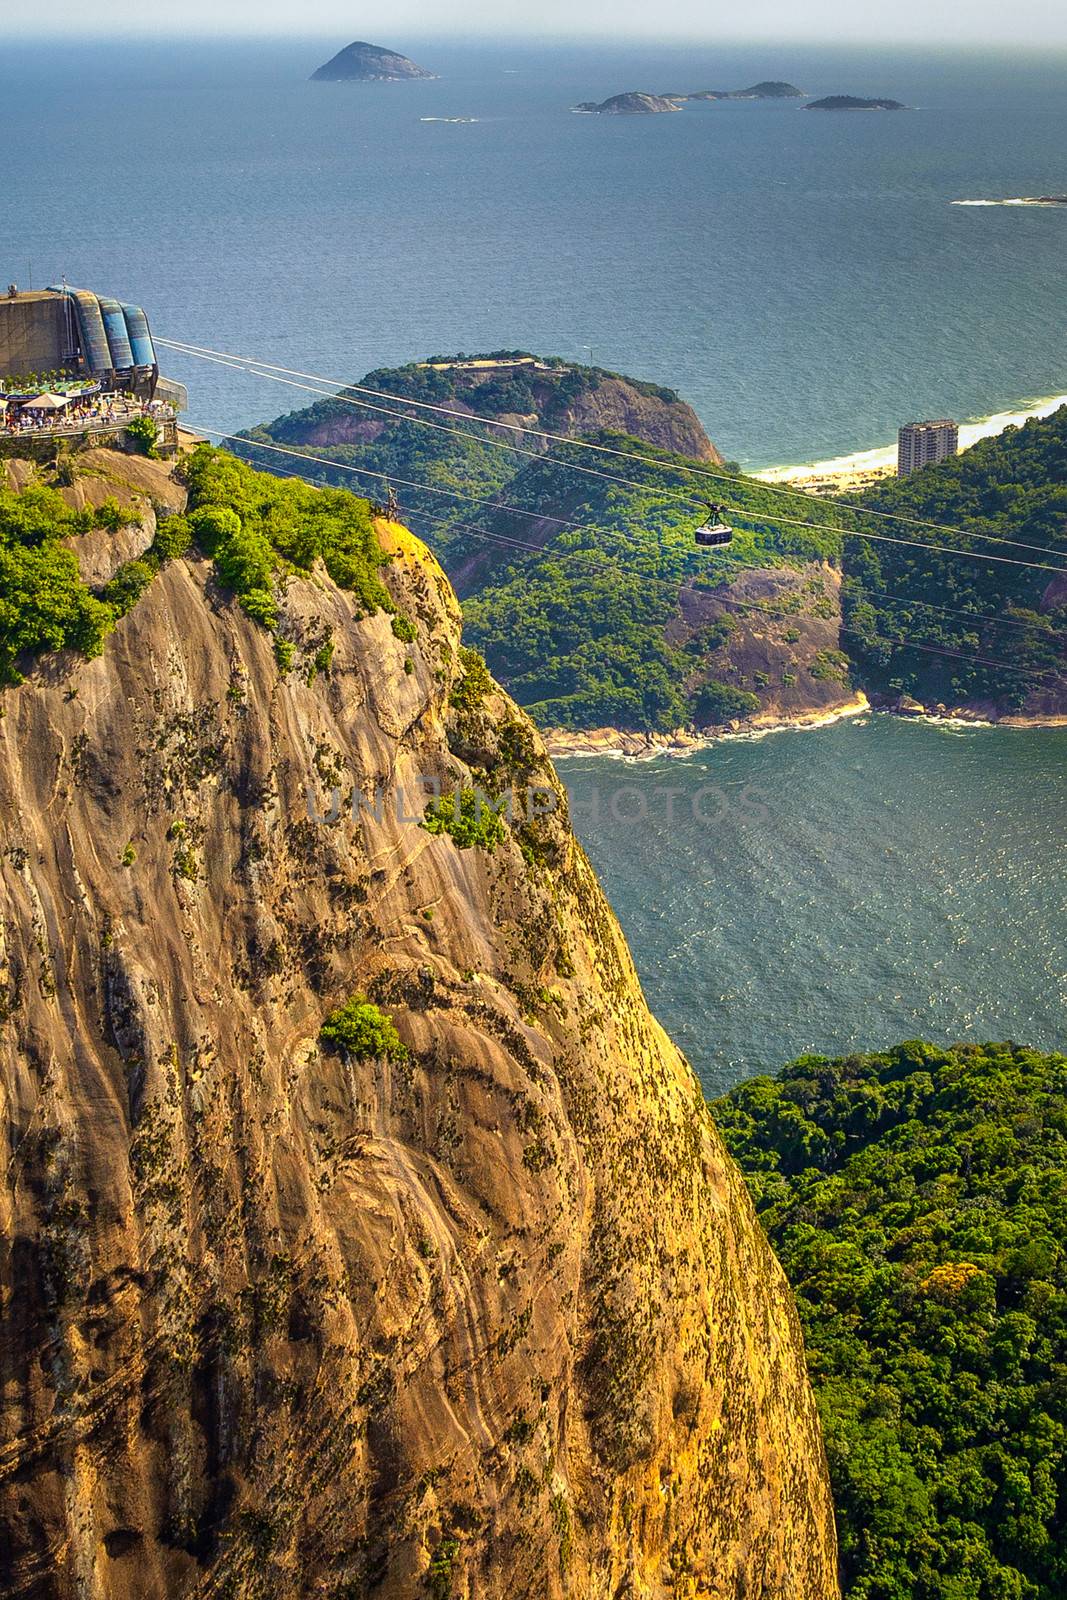 Islands in the ocean, Morro Do Leme, Corcovado, Rio De Janeiro, Brazil